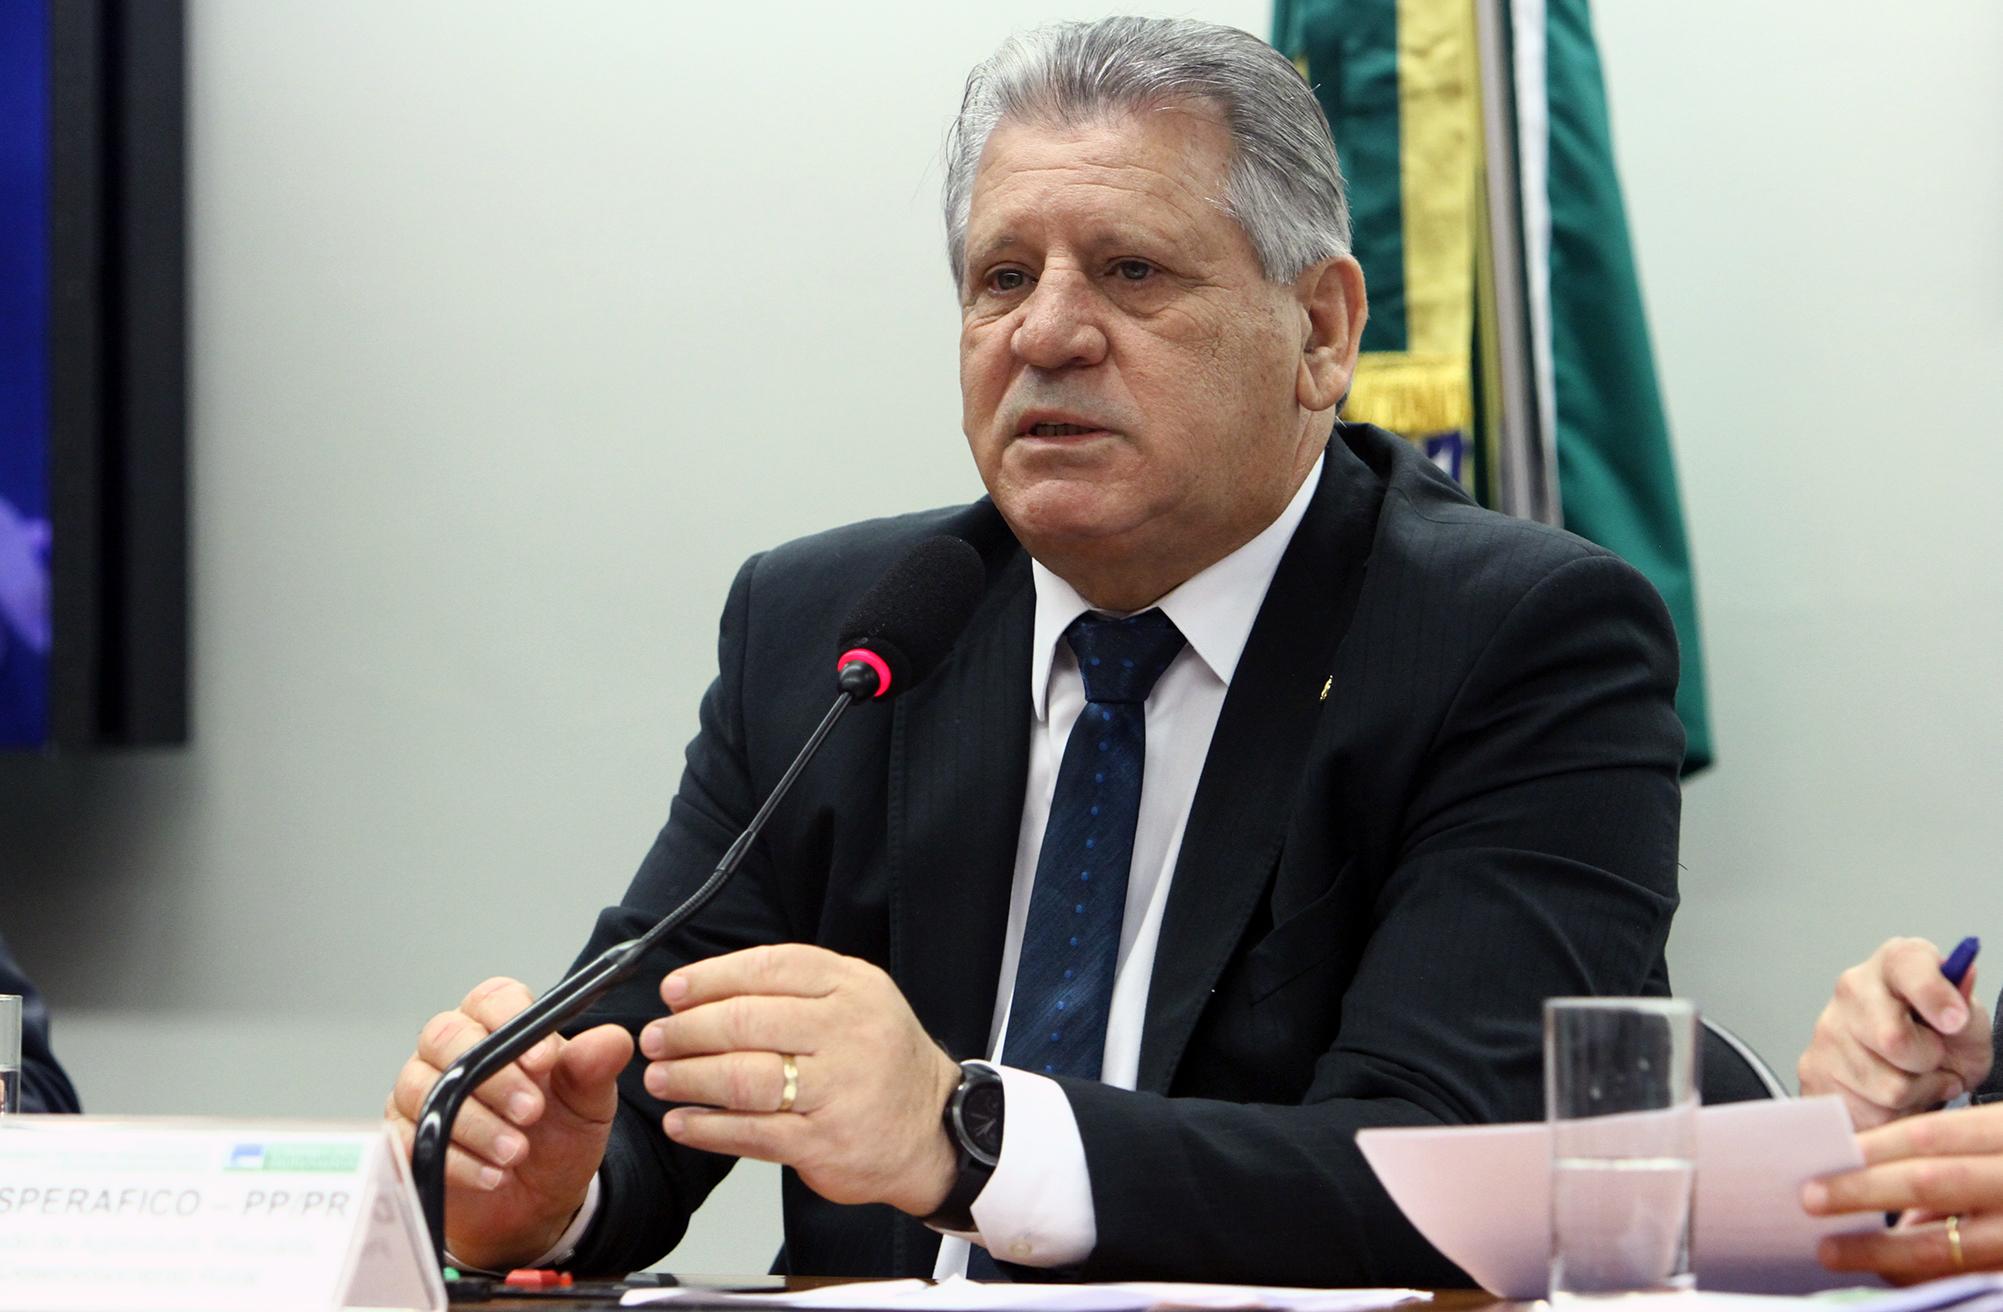 Dilceu Sperafico irá presidir Comissão de Agricultura em 2018